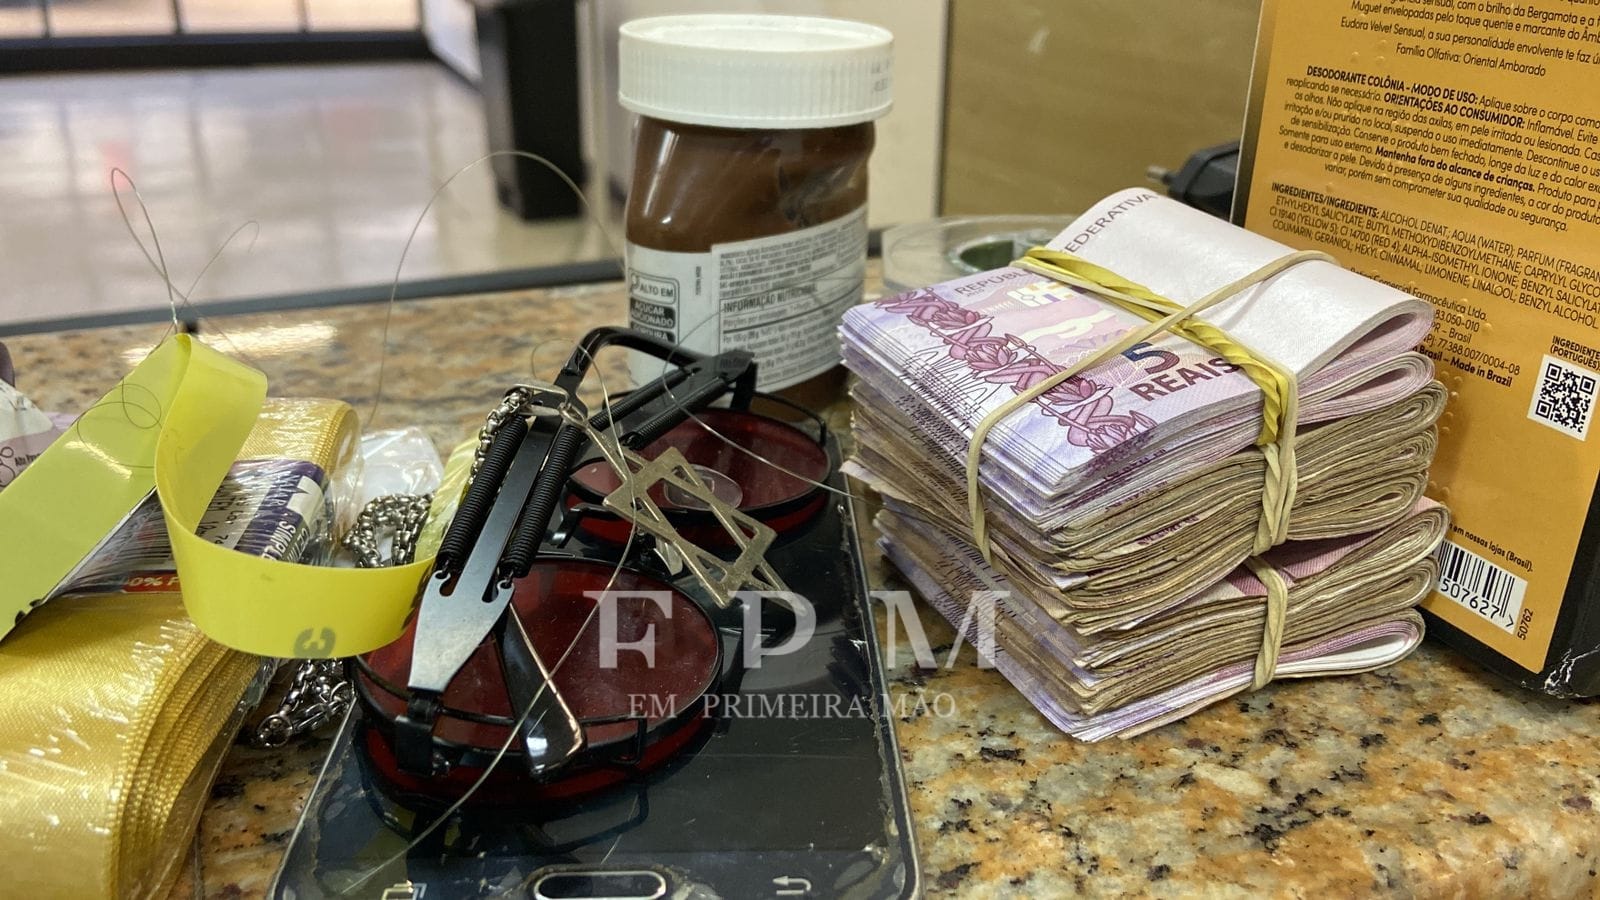 Objetos e dinheiro furtados em lotérica são recuperados pela Polícia Militar em Franca